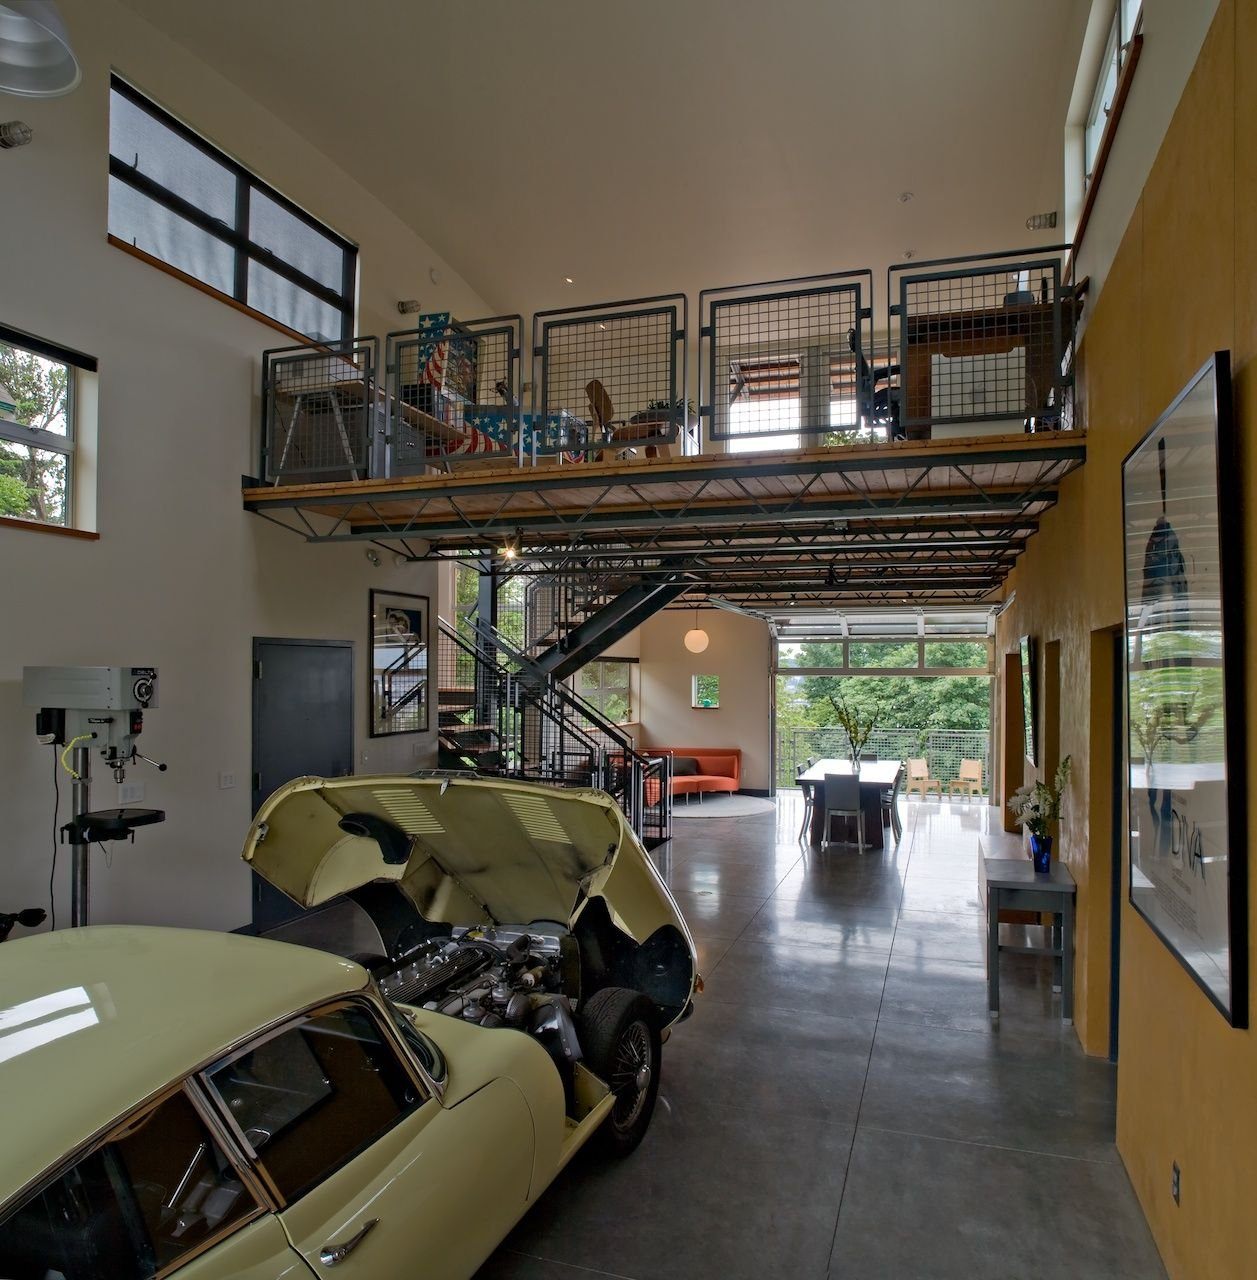 Жилой гараж внутри. Интерьер жилого гаража. Жилой гараж в стиле лофт. Интерьер двухэтажного гаража. Гараж в военном стиле.